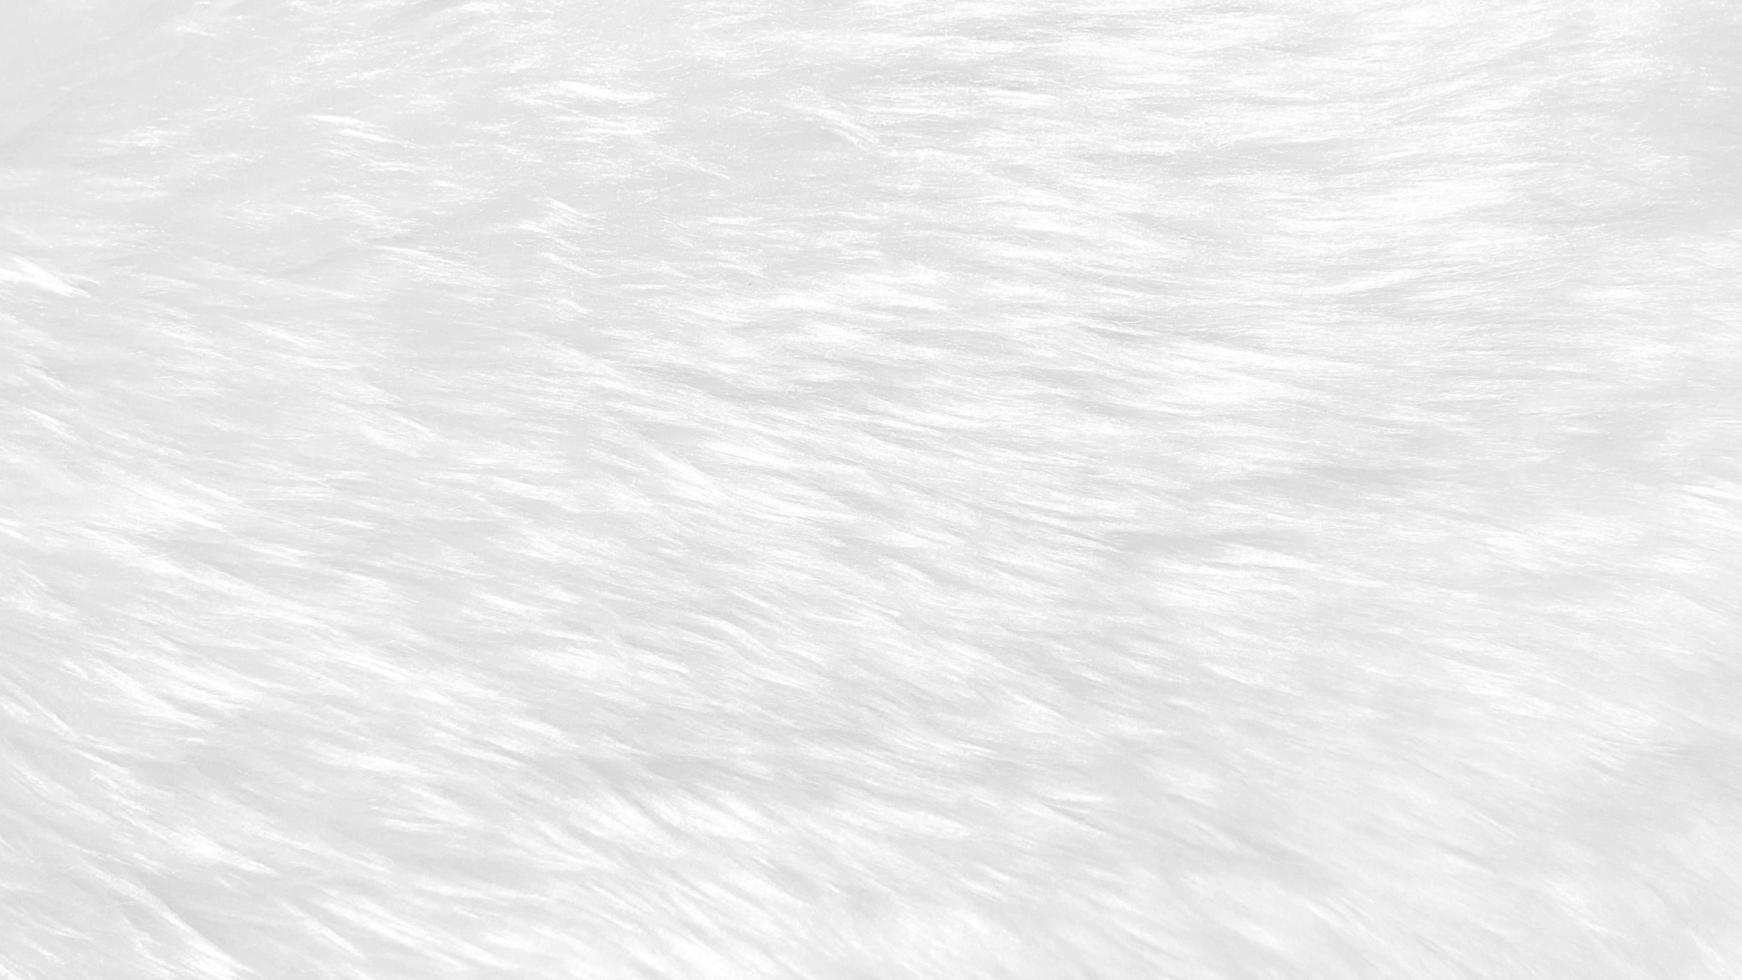 wit schoon wol structuur achtergrond. licht natuurlijk schapen wol. wit naadloos katoen. structuur van pluizig vacht voor ontwerpers. detailopname fragment wit wol tapijt. foto